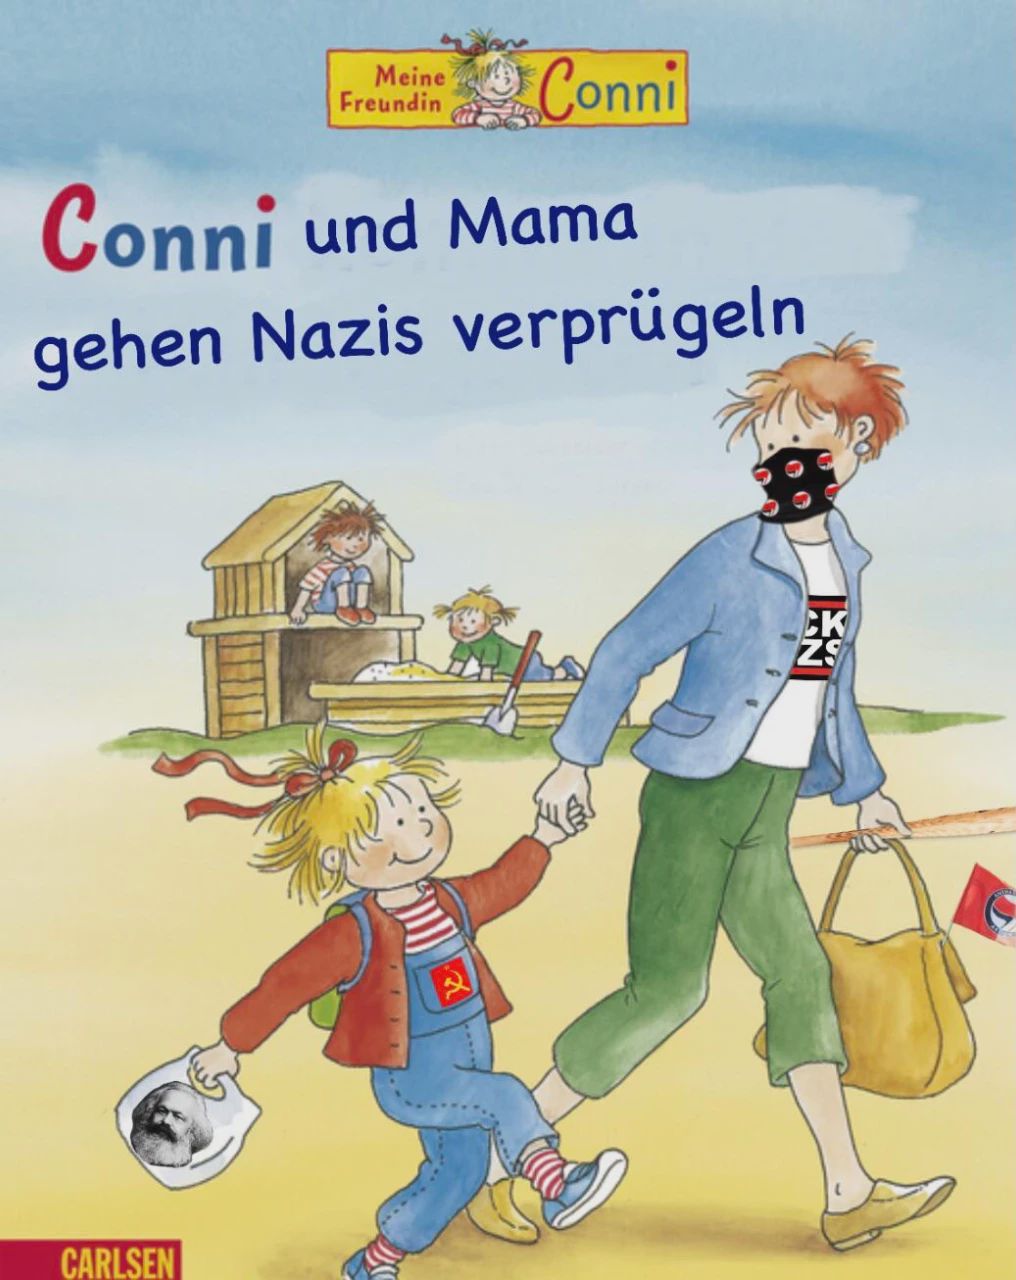 Buchcover: Connie und Mama gehen Nazis verprügeln.